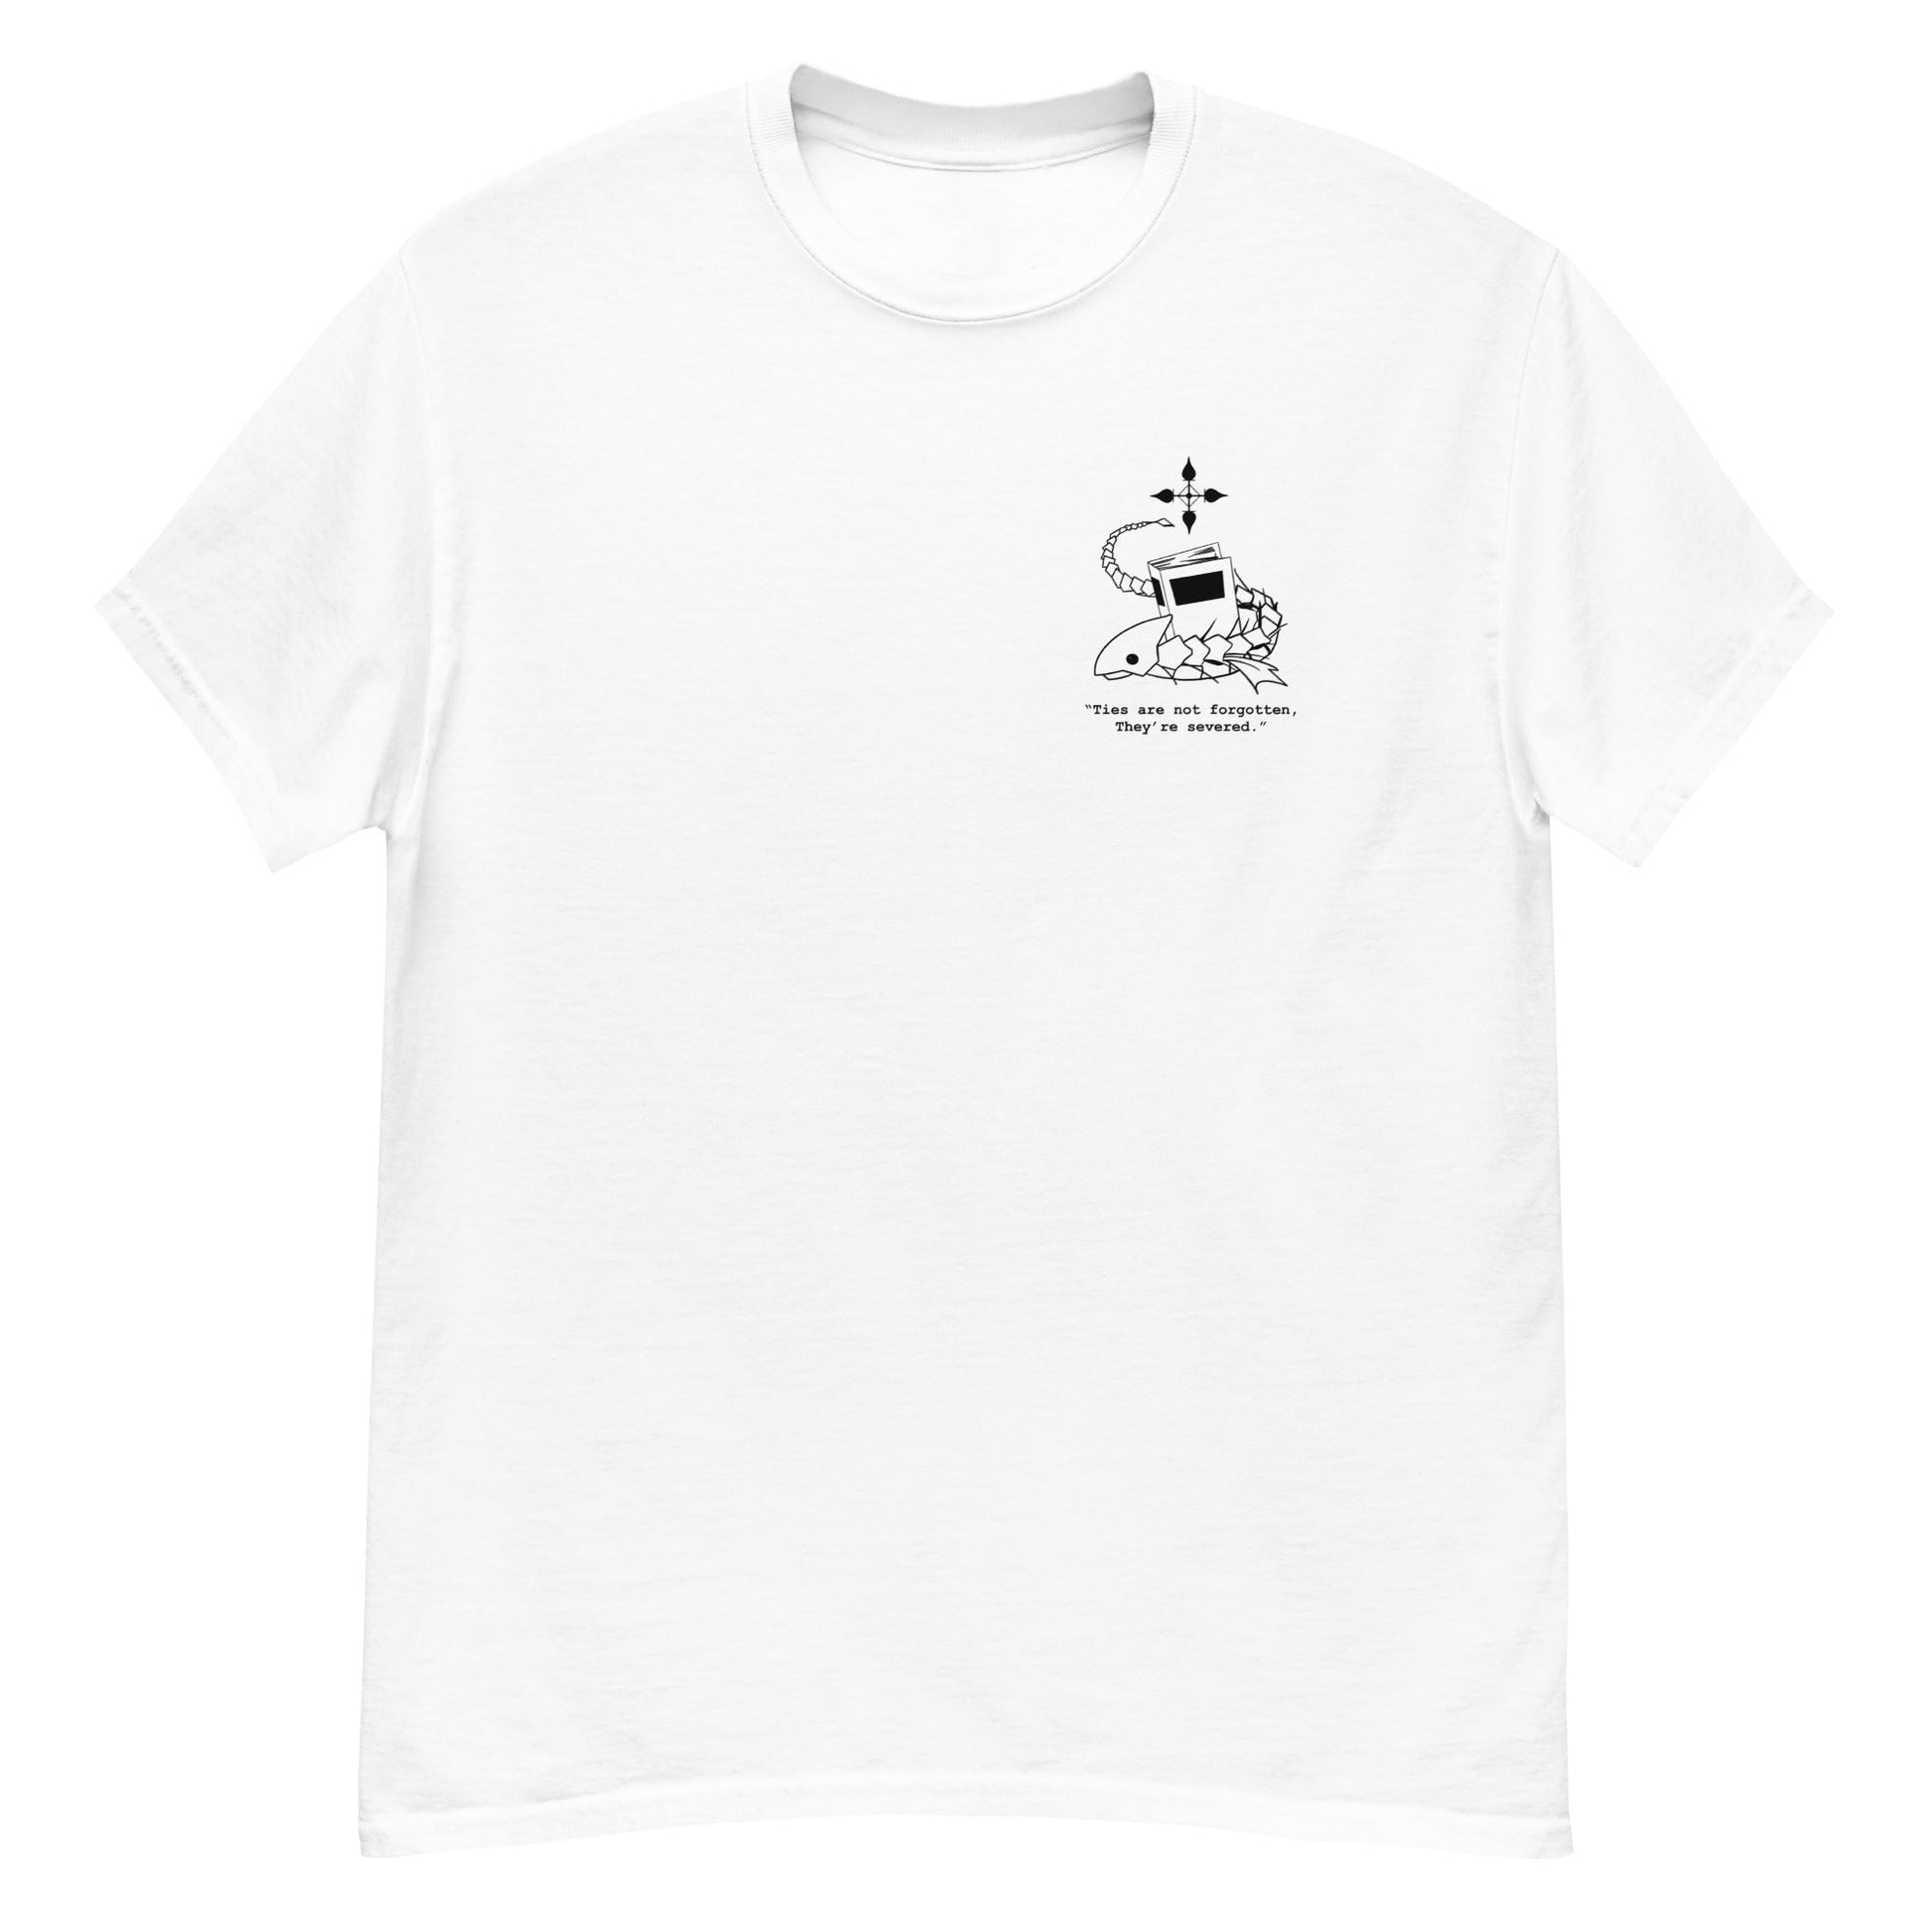 Indoor Fish - T-Shirt - Project NuMa - T-Shirt